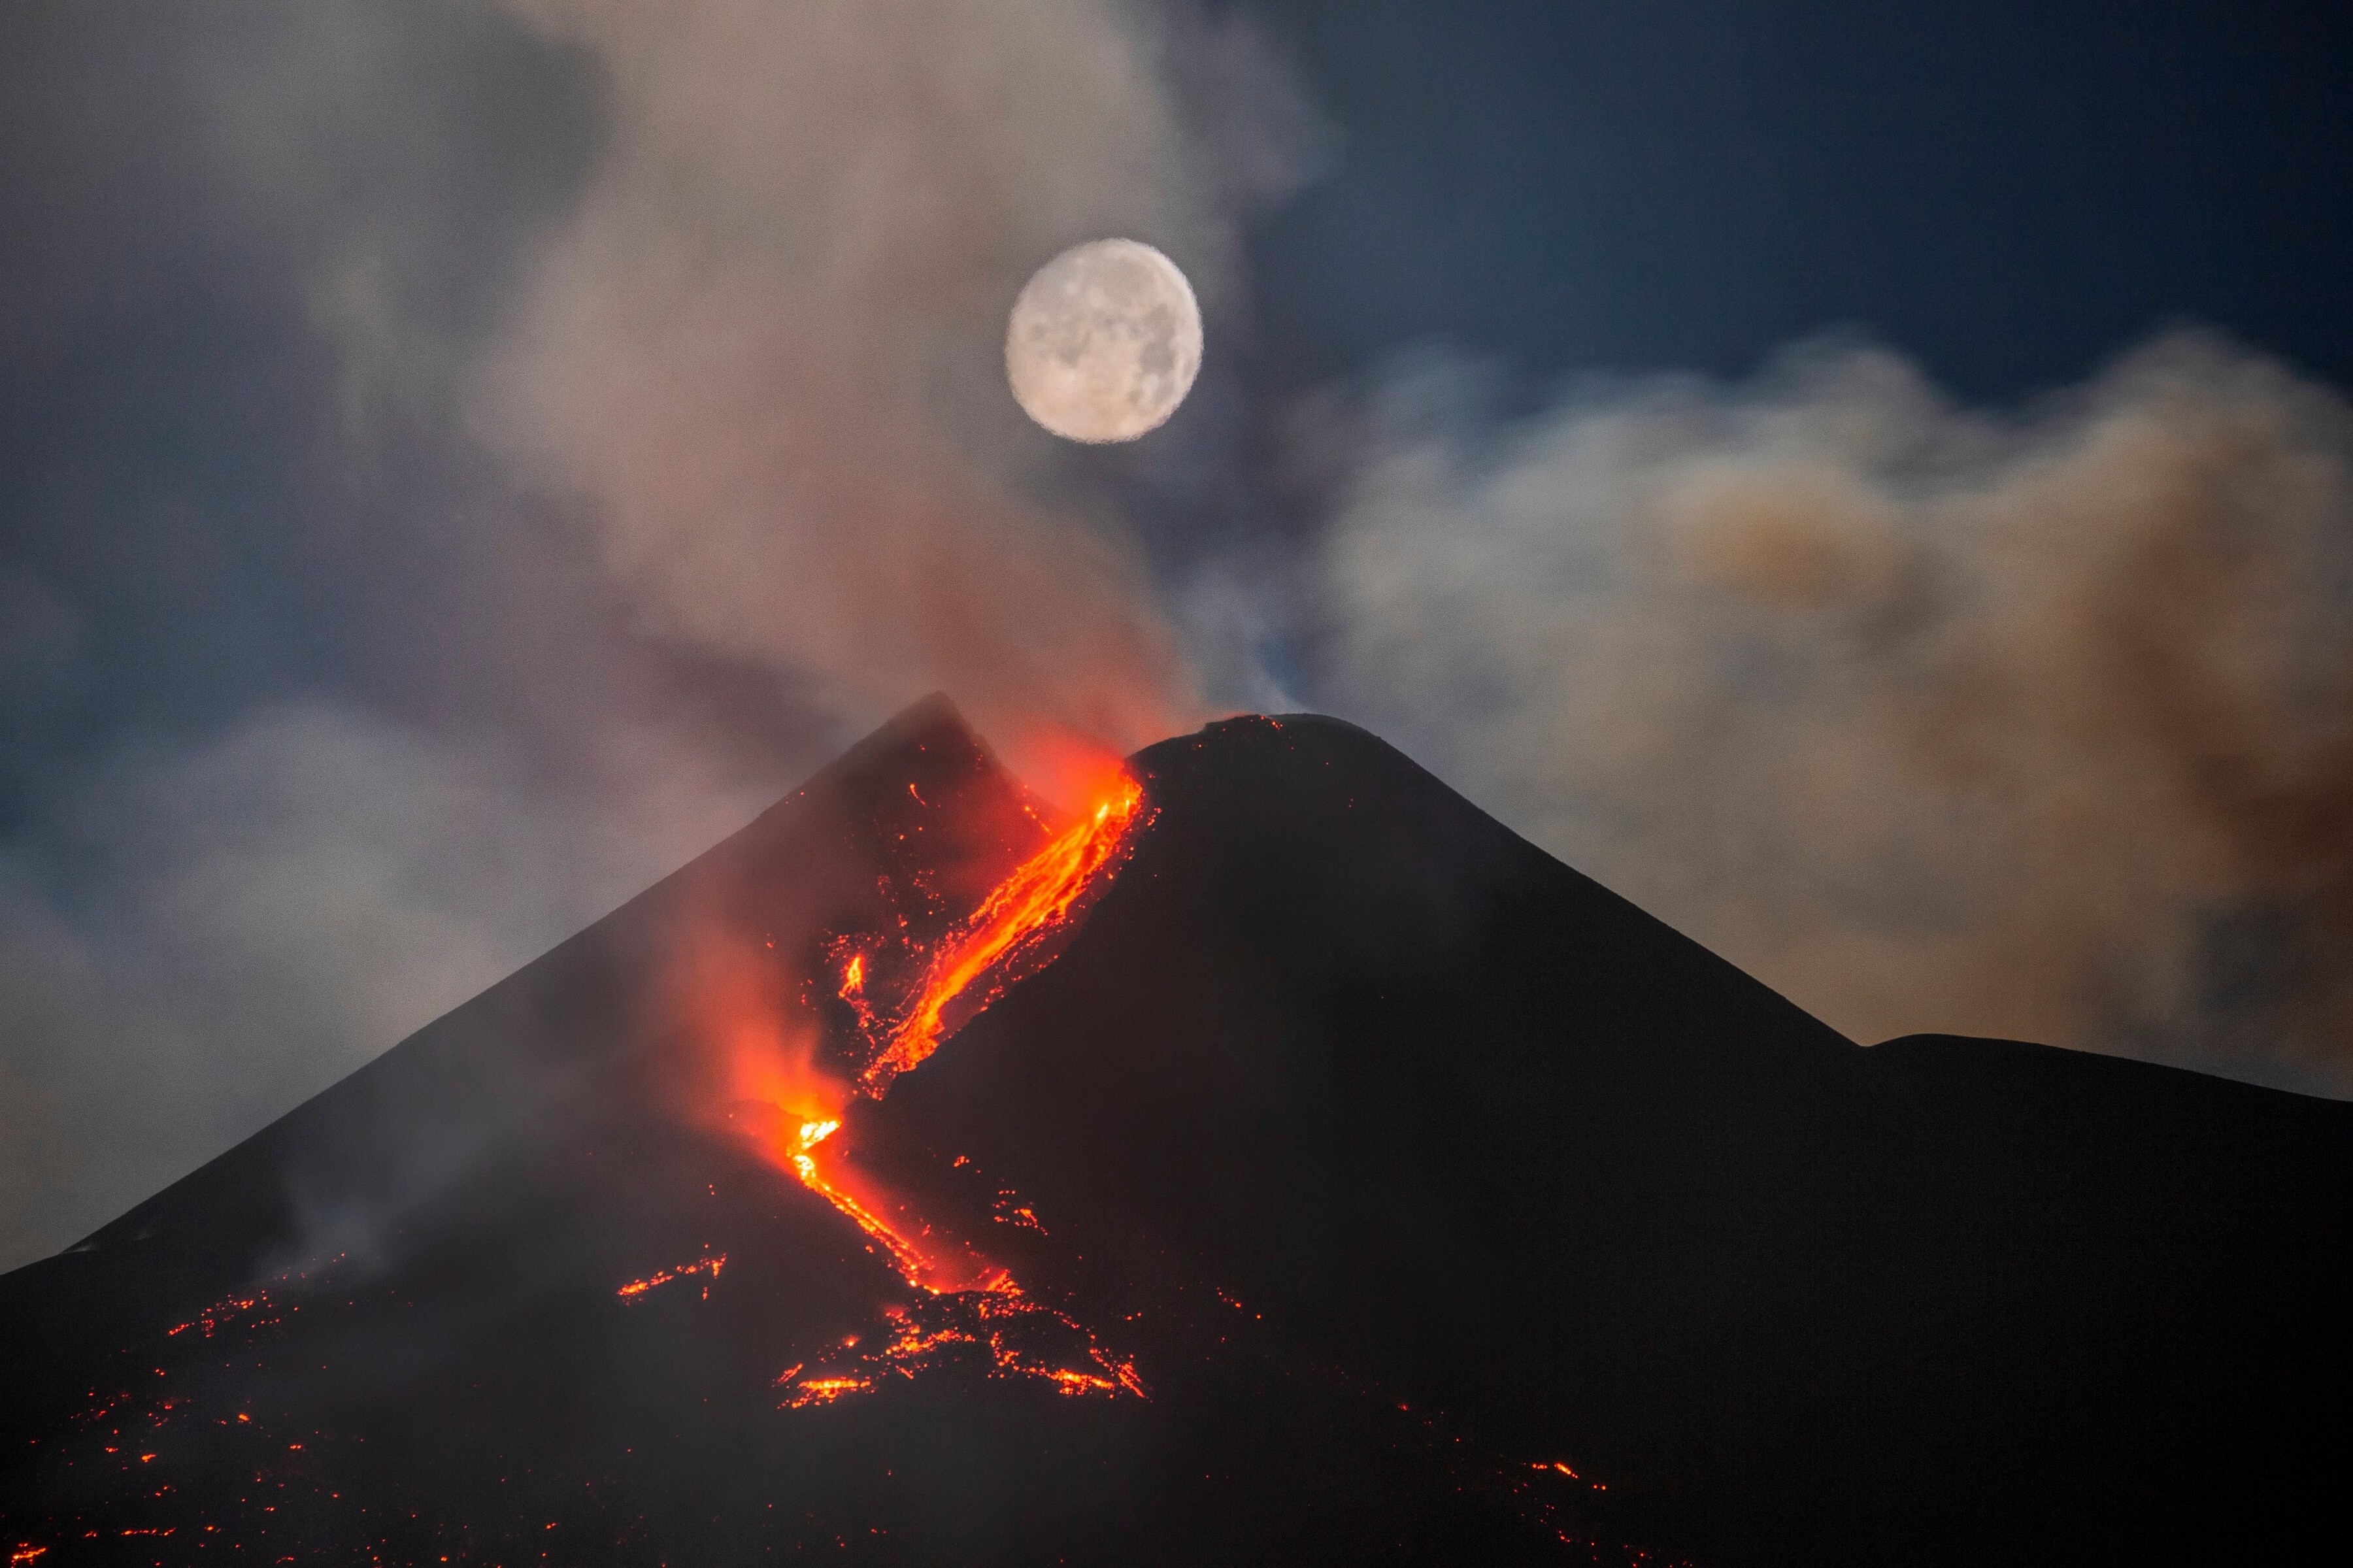 2 место в категории Небесные пейзажи, 2021. Луна над кратером вулкана Этна, Сицилия, Италия. Автор Дарио Джаннобиле